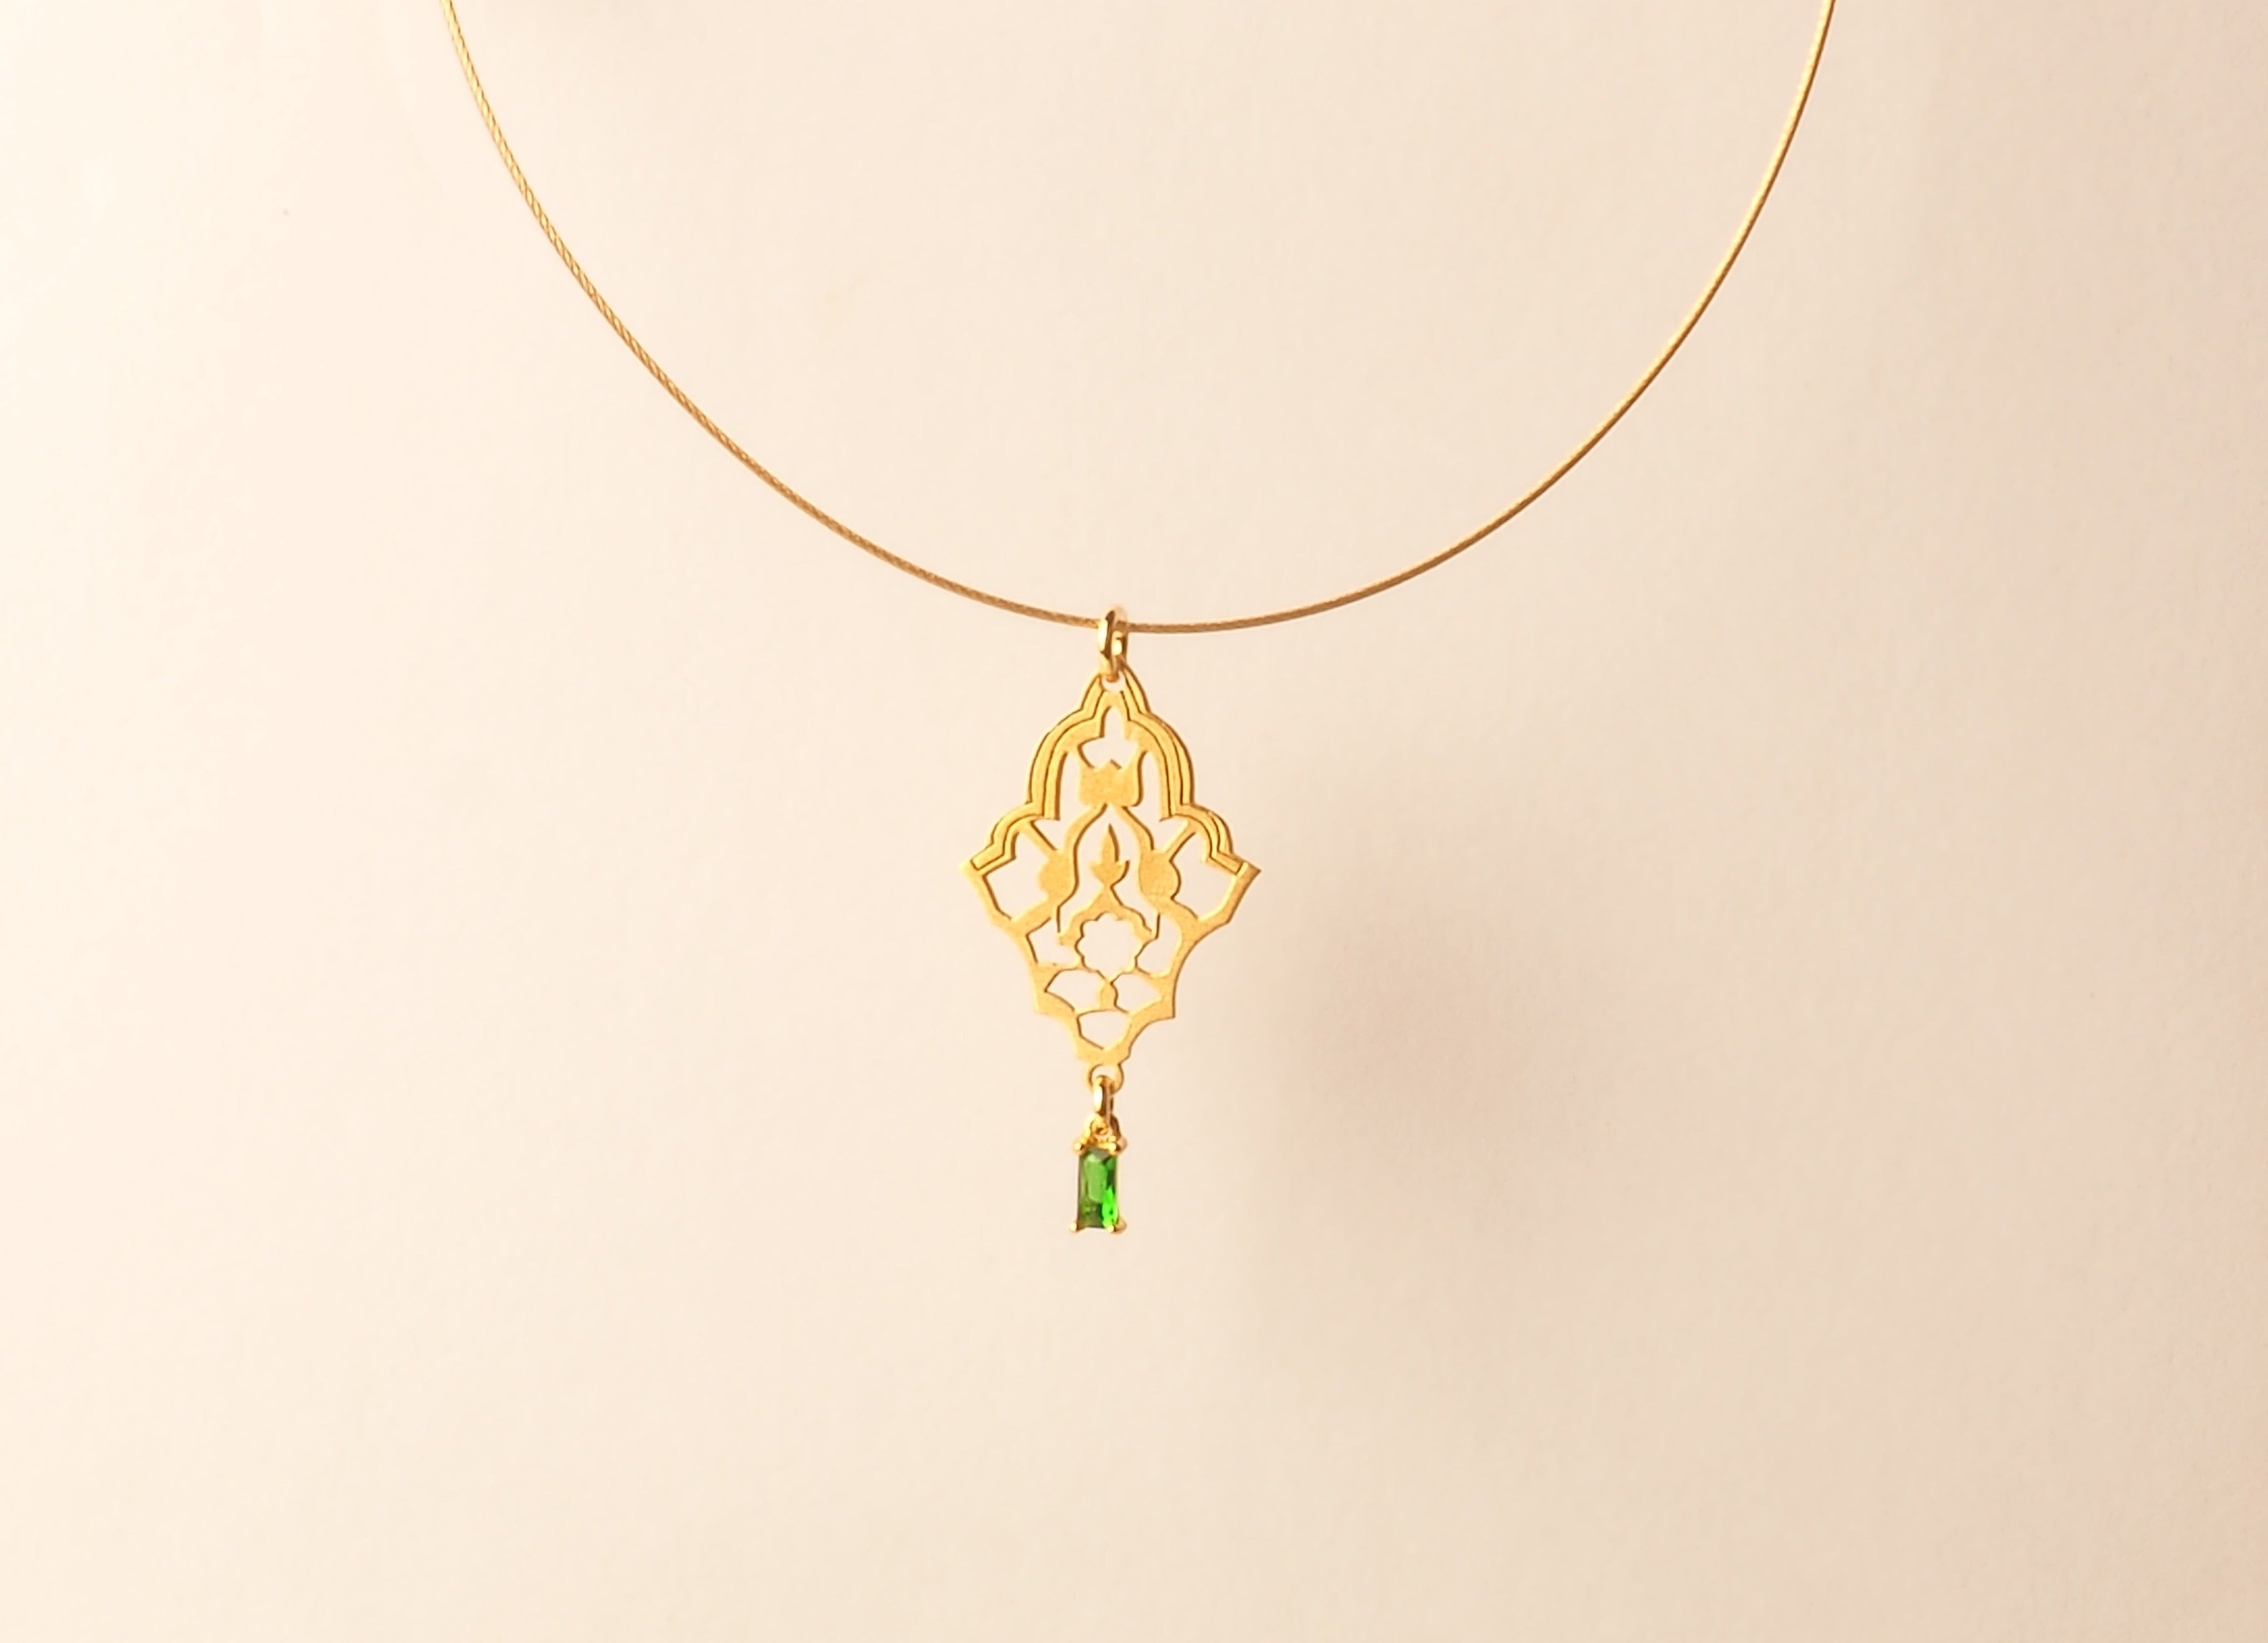 Colgante de plata chapada en oro y circonita esmeralda inspirados en el sebka de la arquitectura nazarí de la alhambra de granada y almohade de sevilla. Auténtica oyería artesanal de Granada